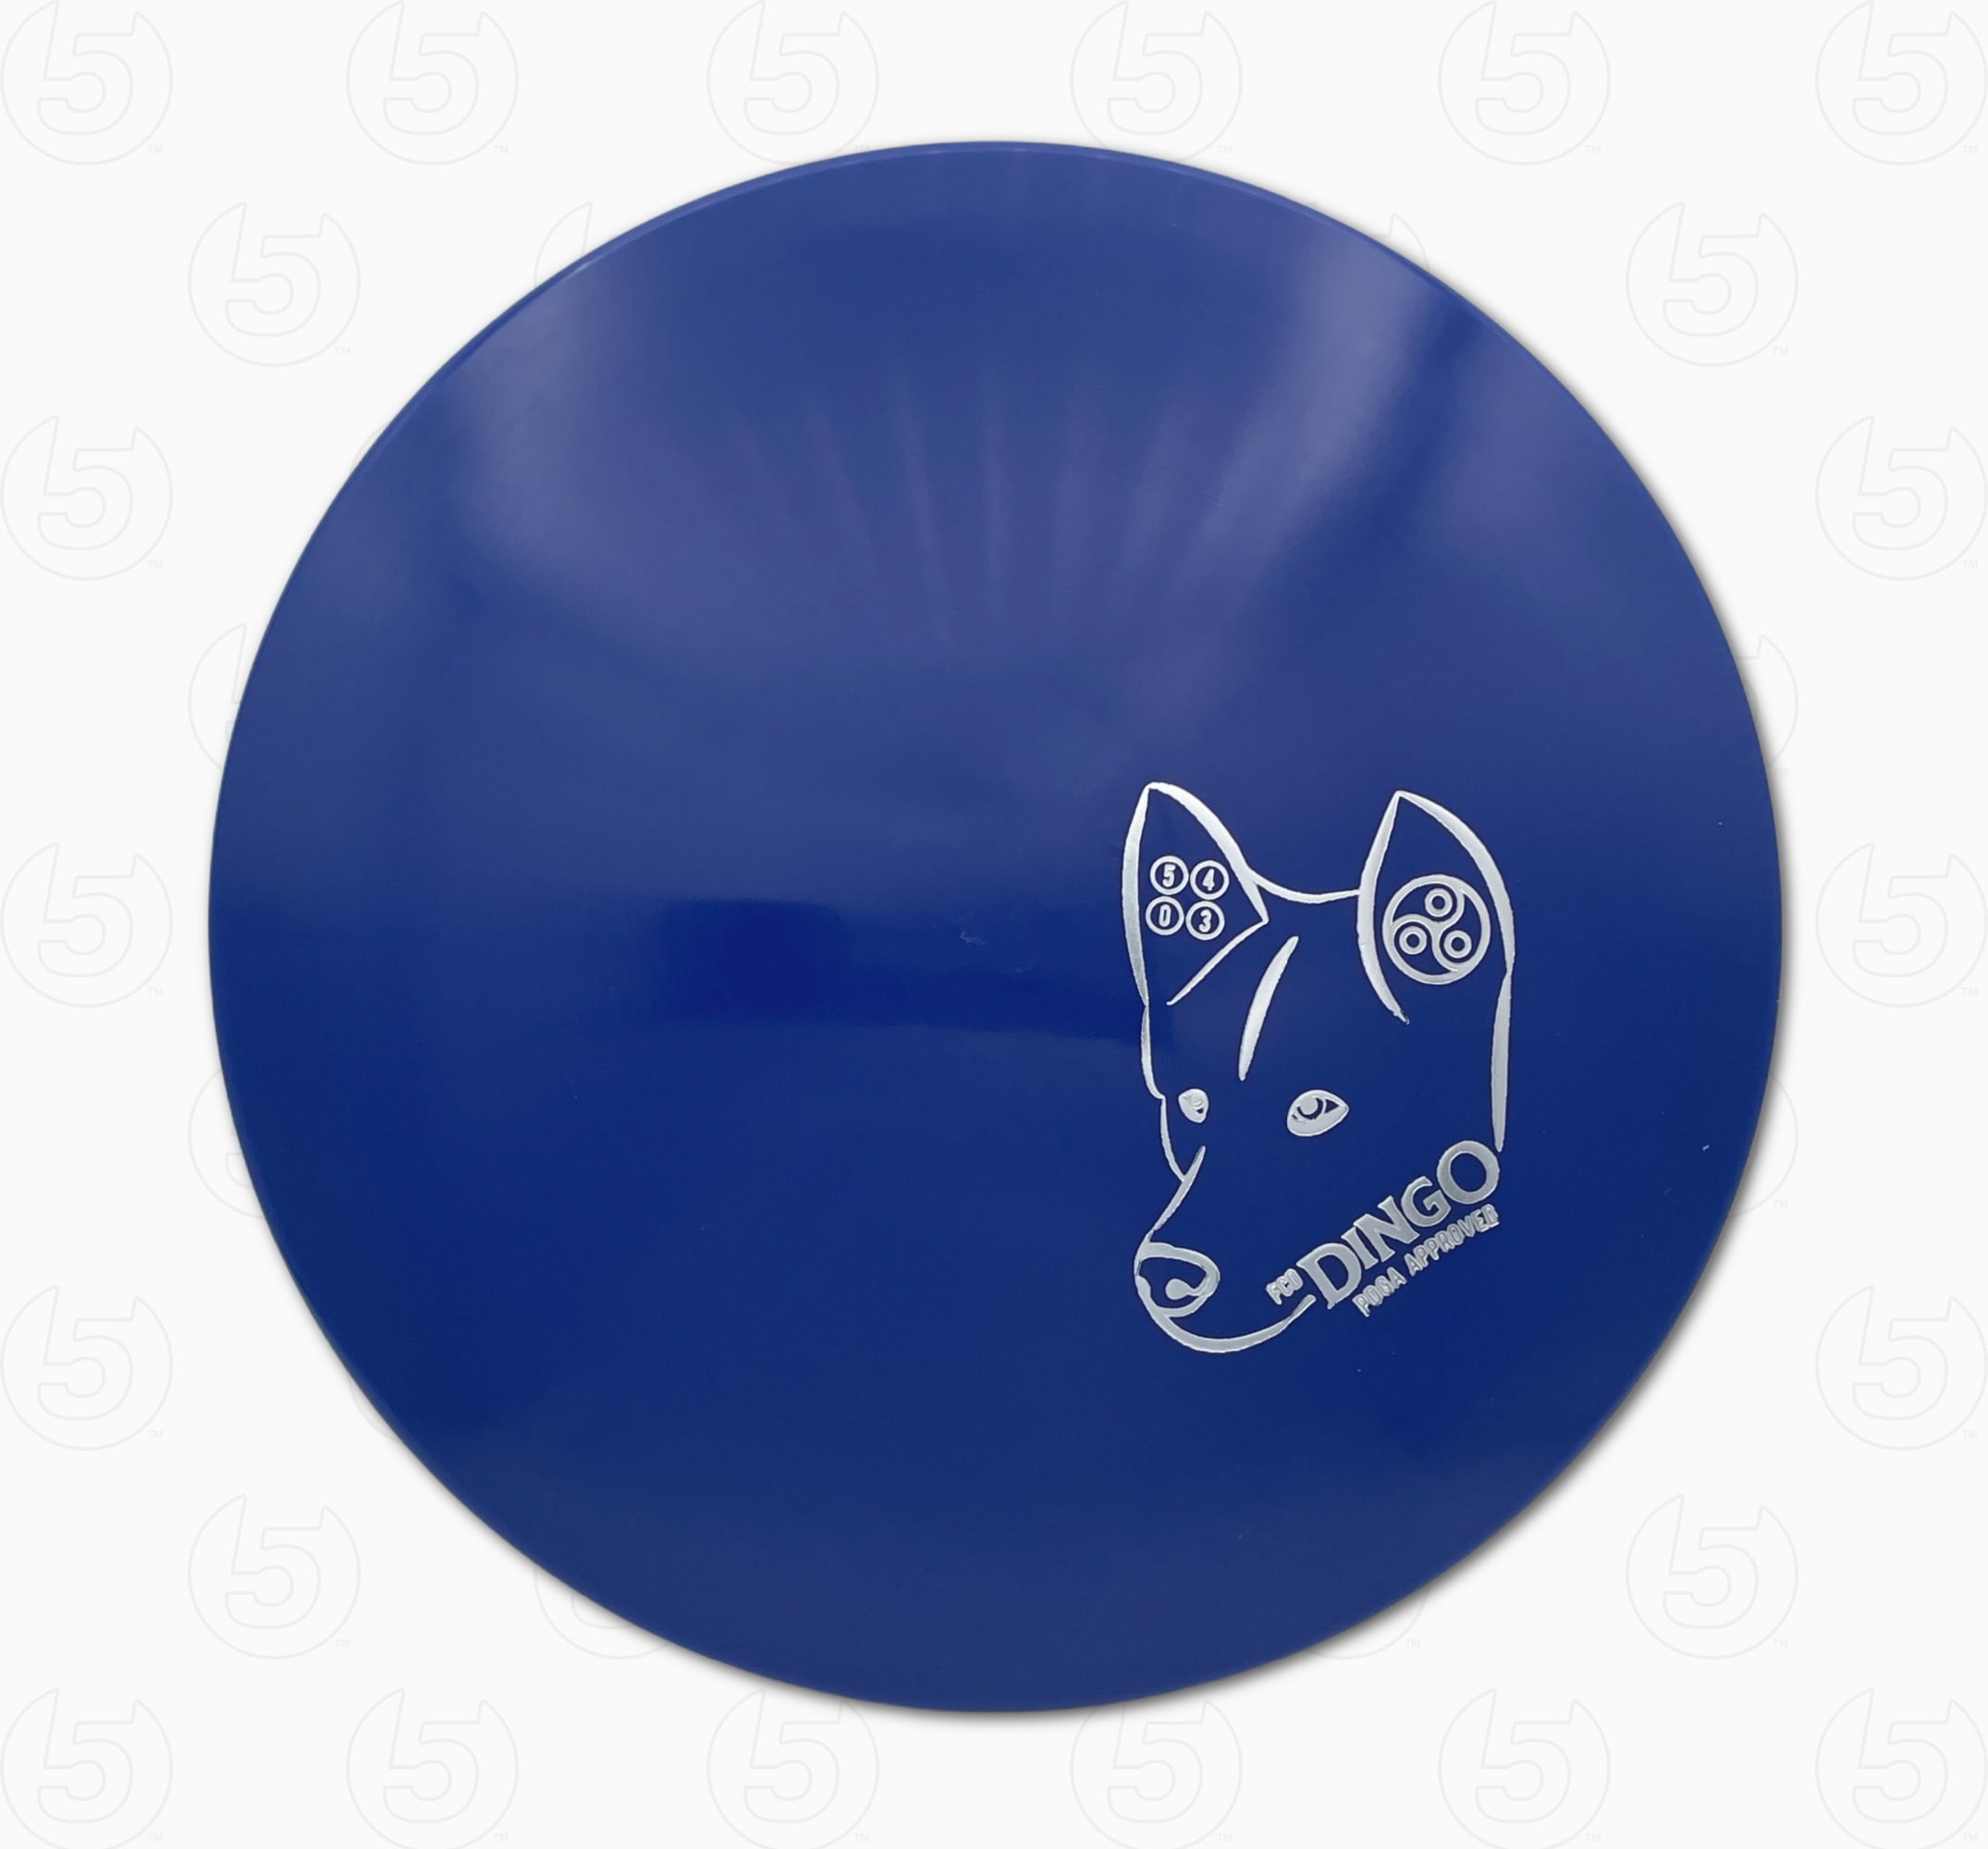 Dingo - Overstable Midrange – Fourth Circle Discs